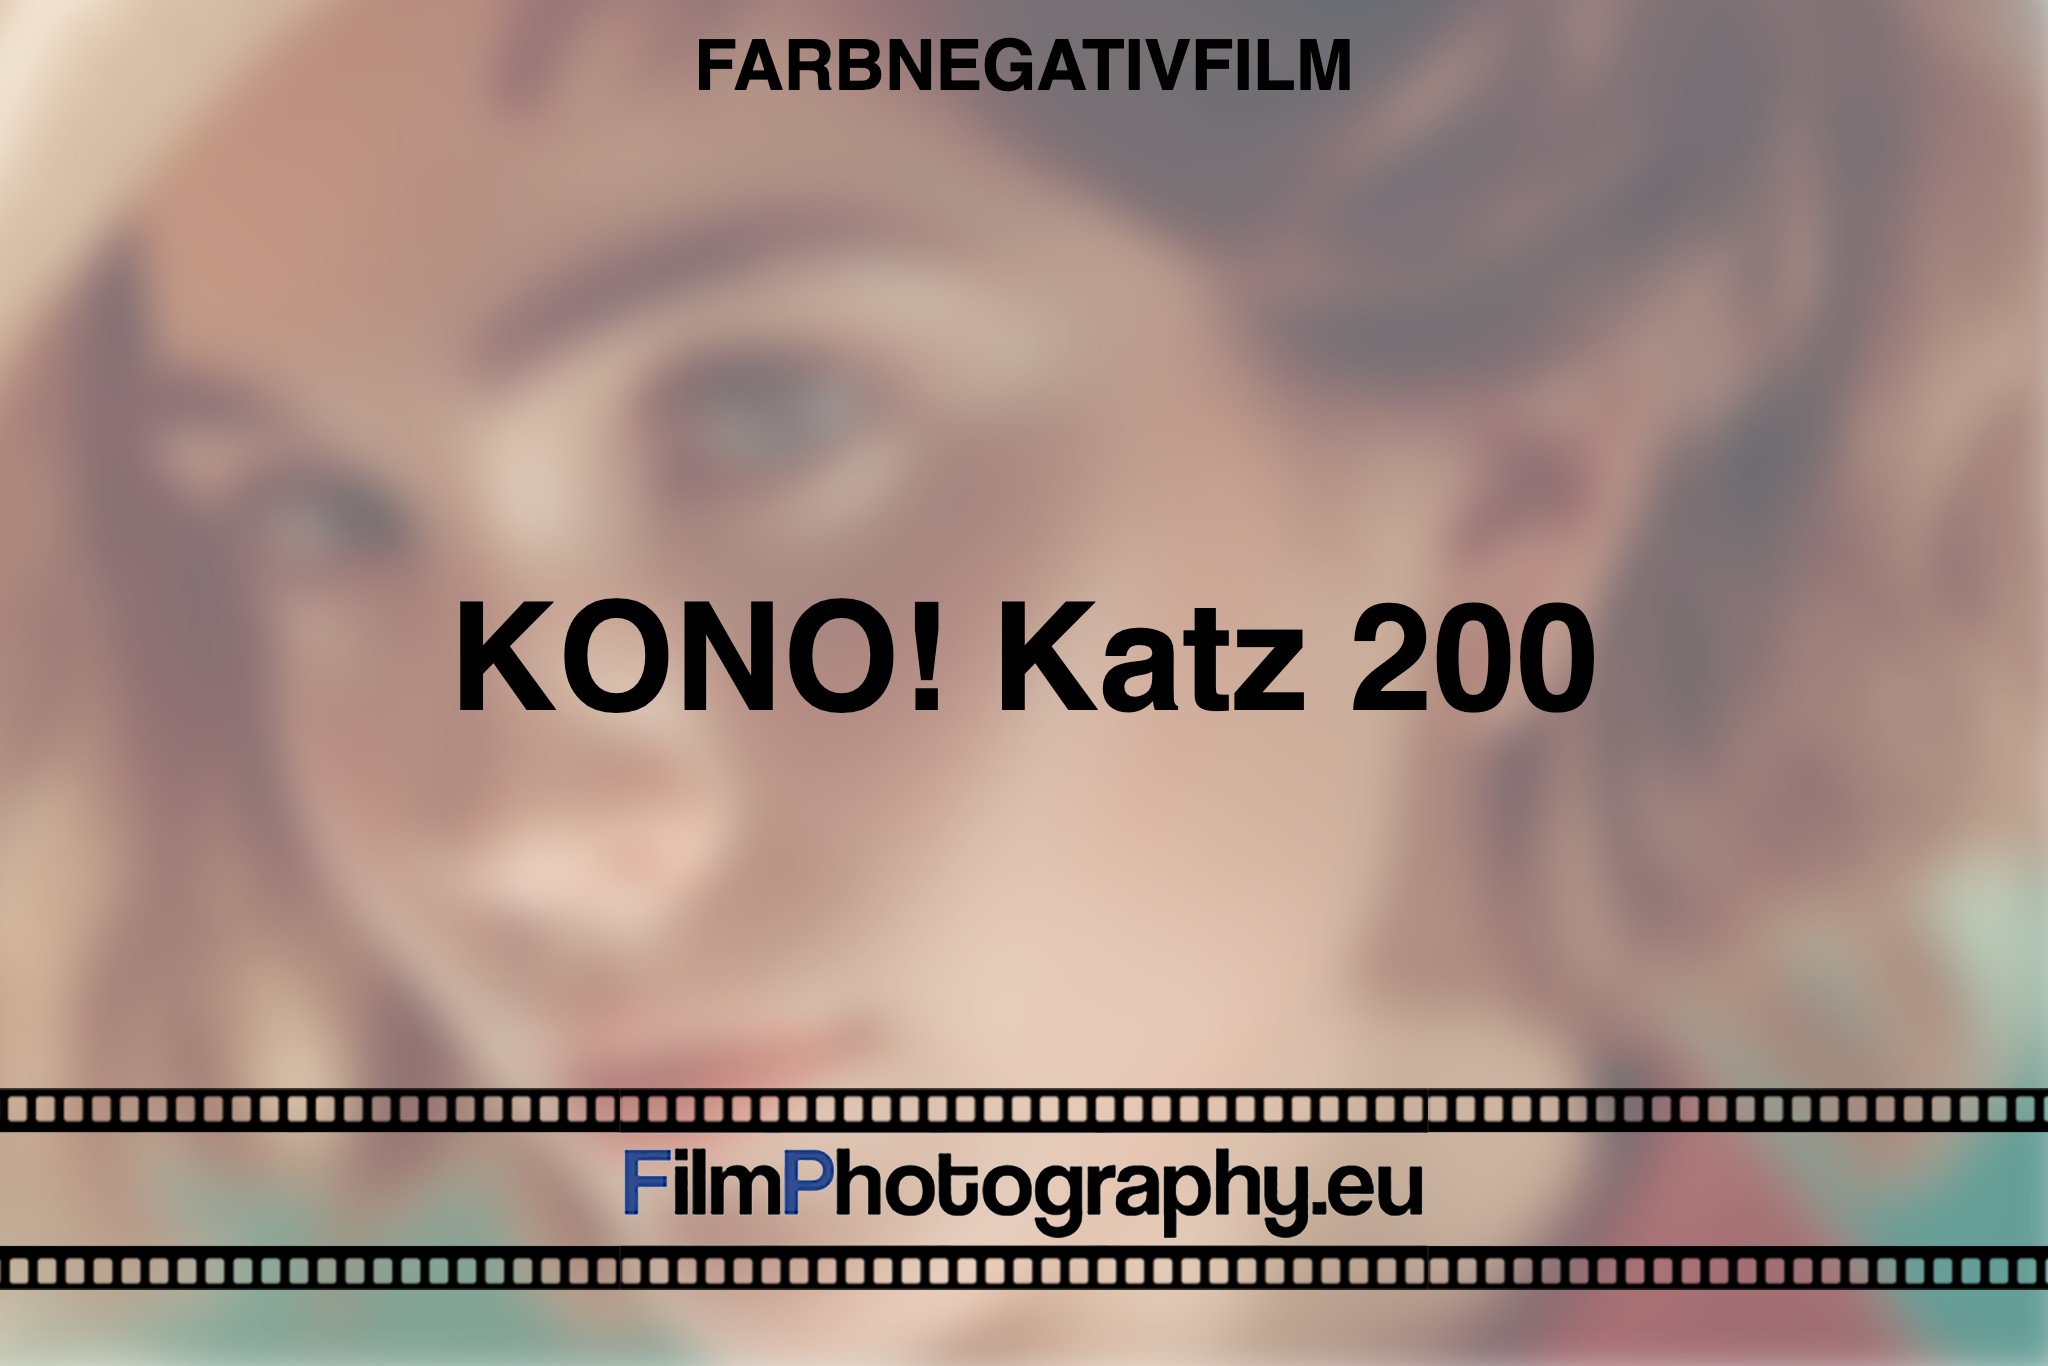 kono-katz-200-farbnegativfilm-bnv